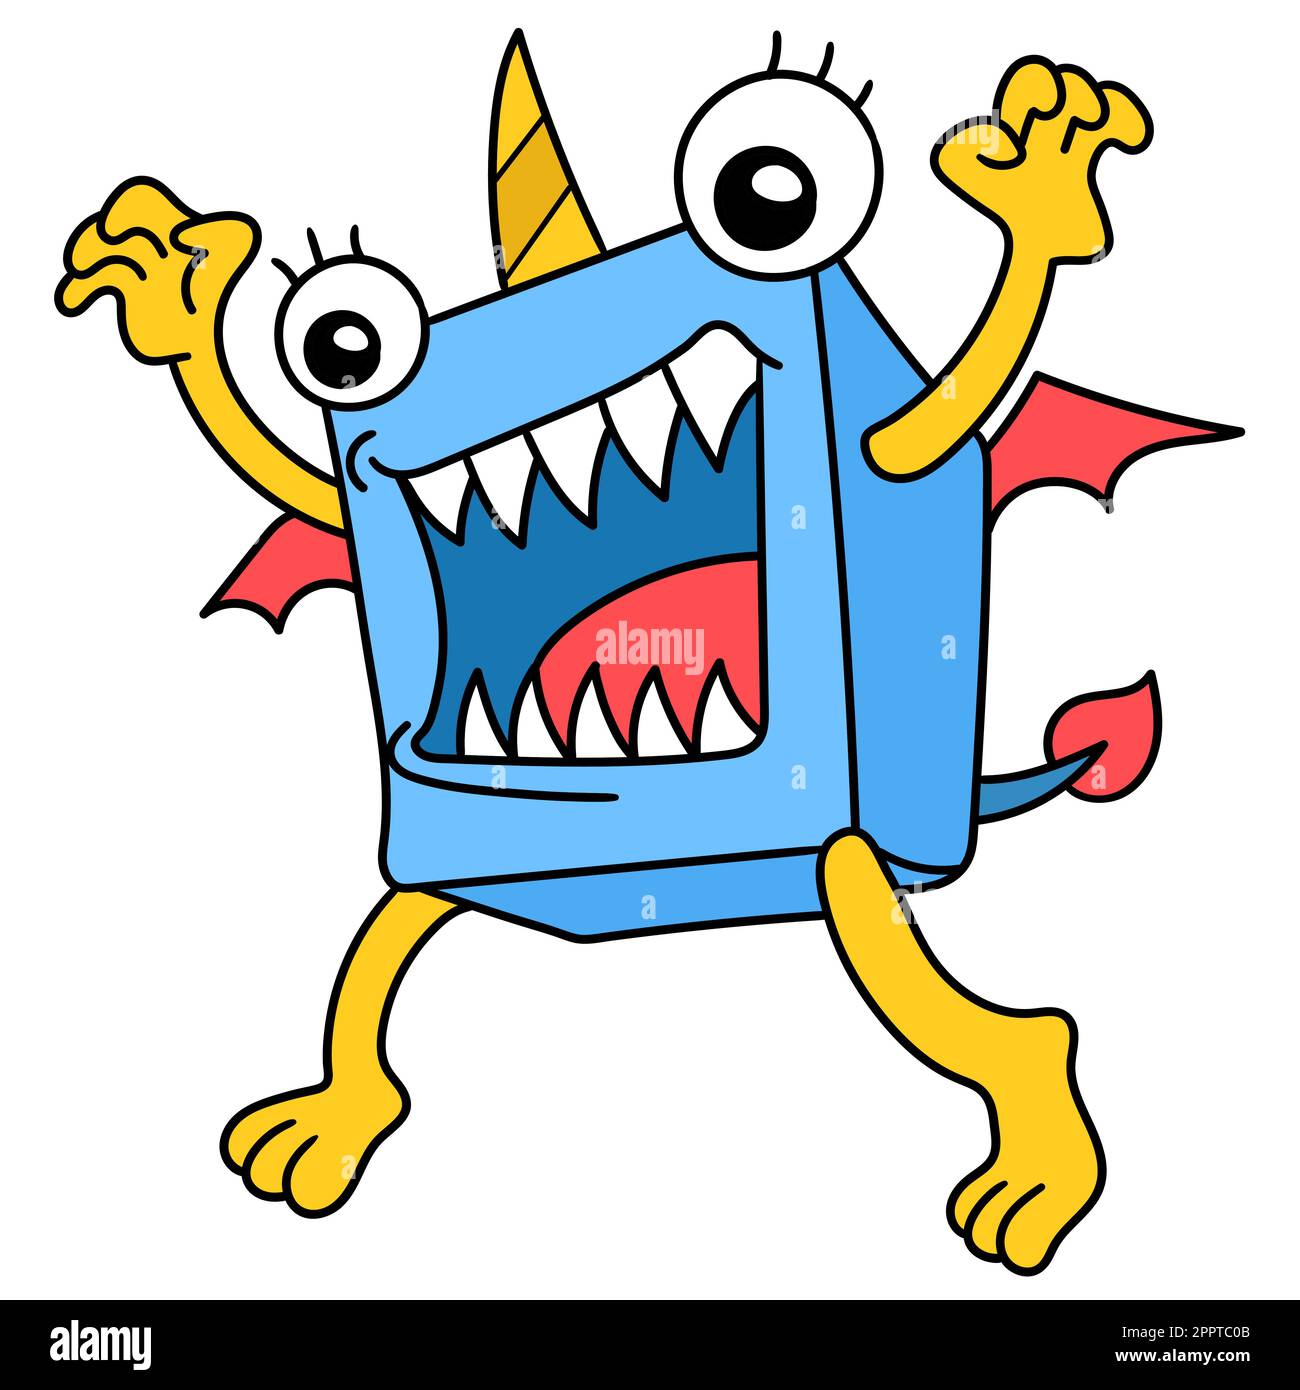 Un mostro boxy con denti affilati pronti a rimbalzare, doodle kawaii. immagine dell'icona di doodle Illustrazione Vettoriale